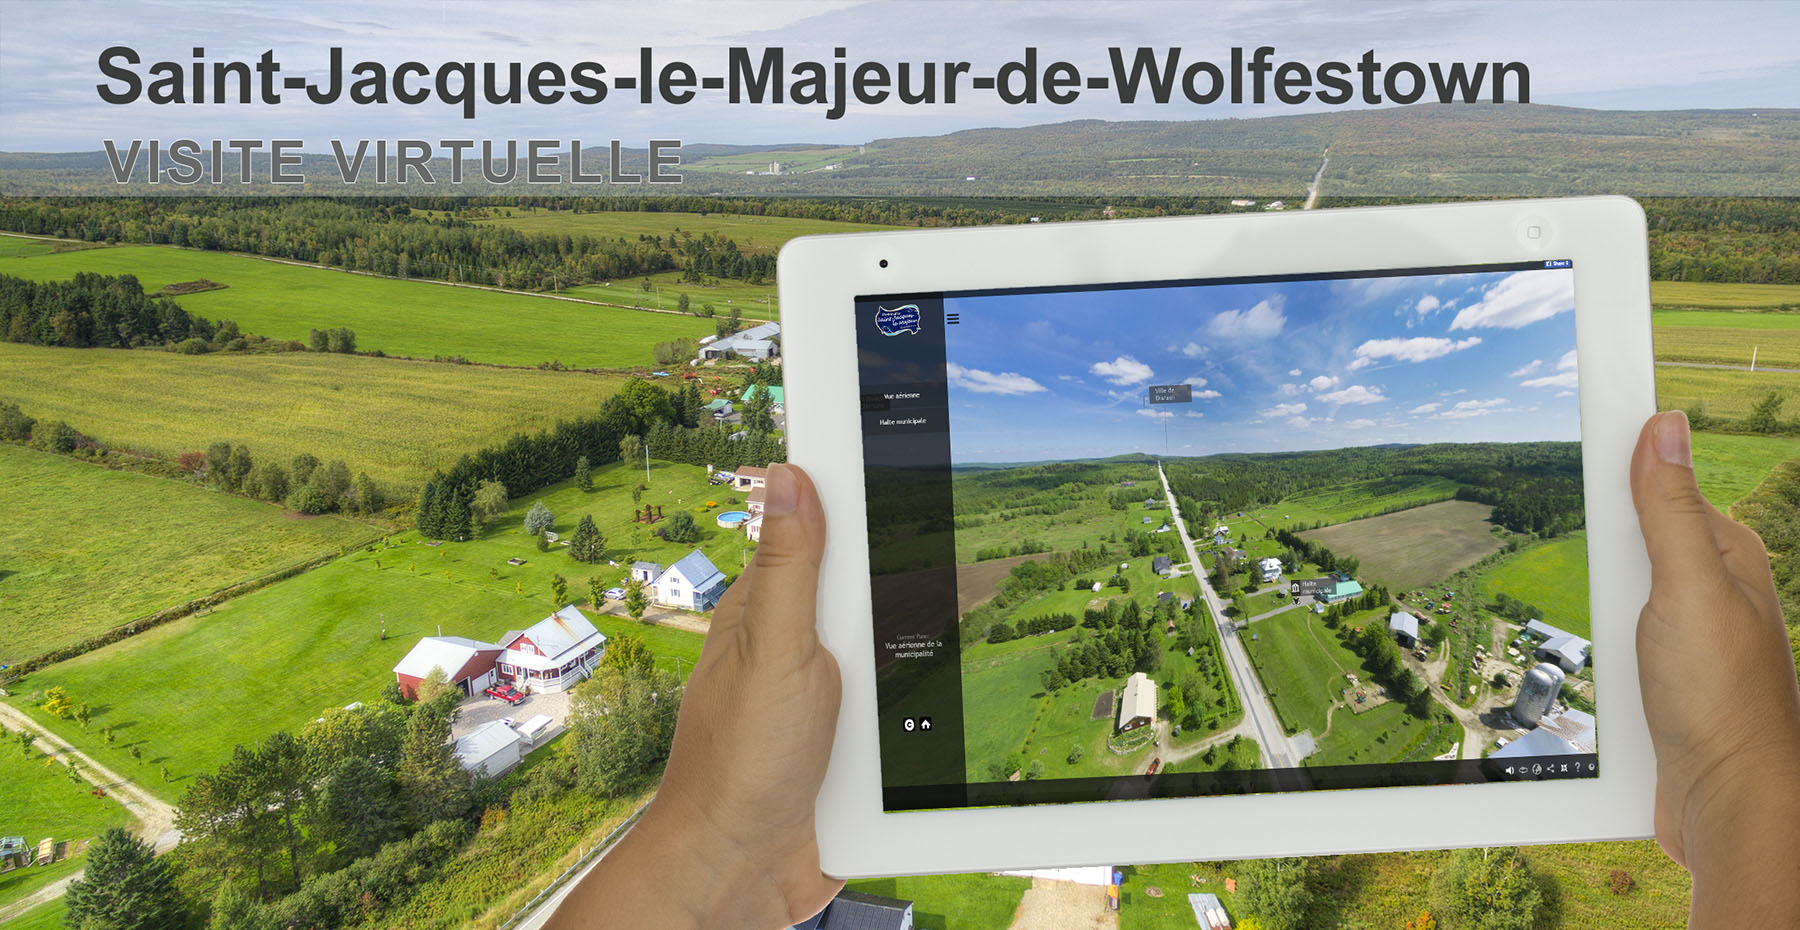 Visite virtuelle 360 degrés St-Jacques-le-Majeur-de-Wolfestown